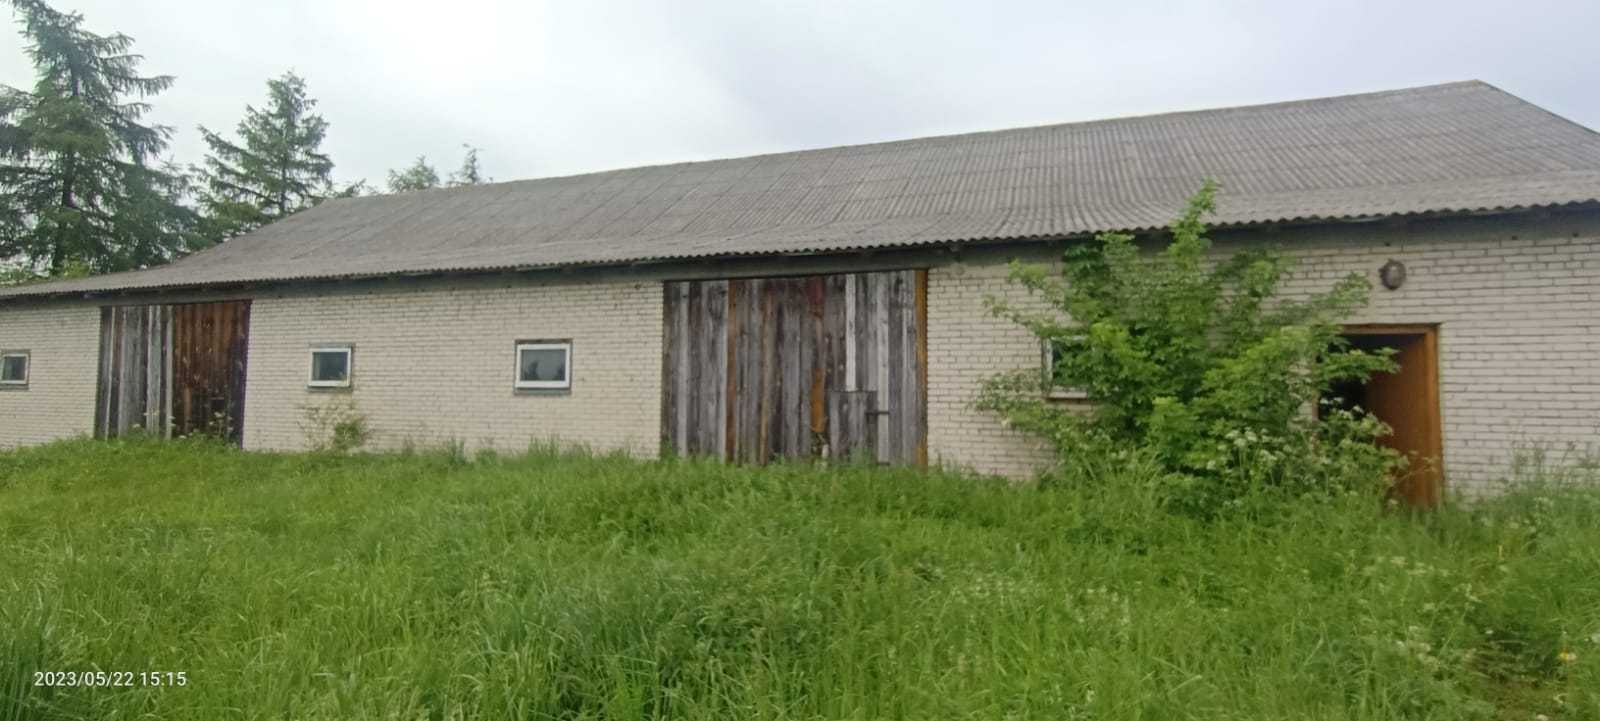 Dom na działce 45 arów wraz ze stodołą i garażem.